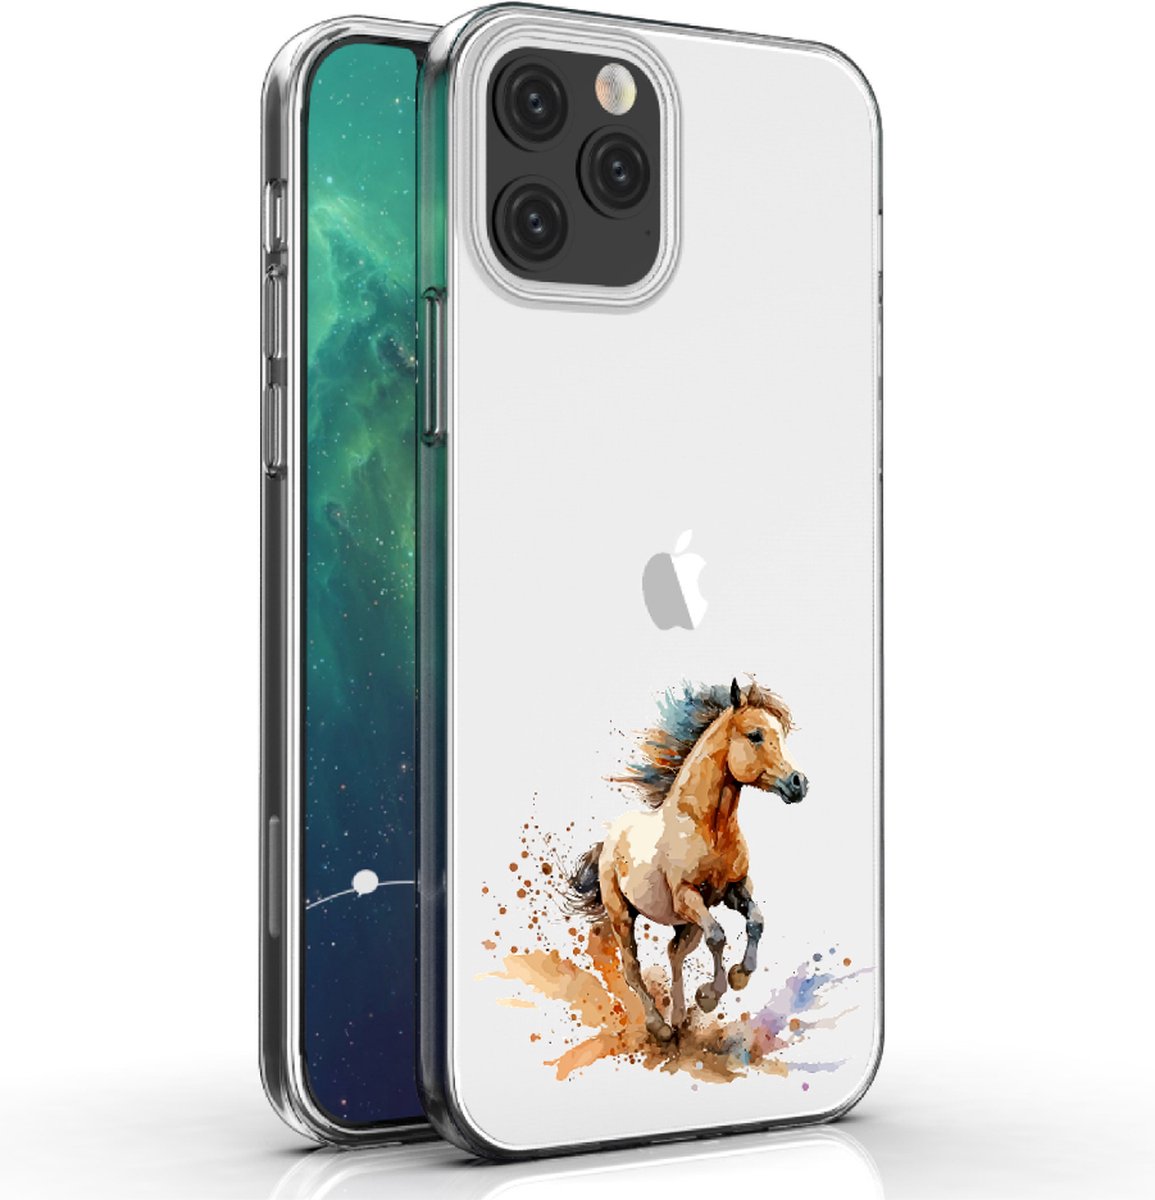 Apple Iphone 12 Pro Max telefoonhoesje transparant siliconen hoesje - Paard